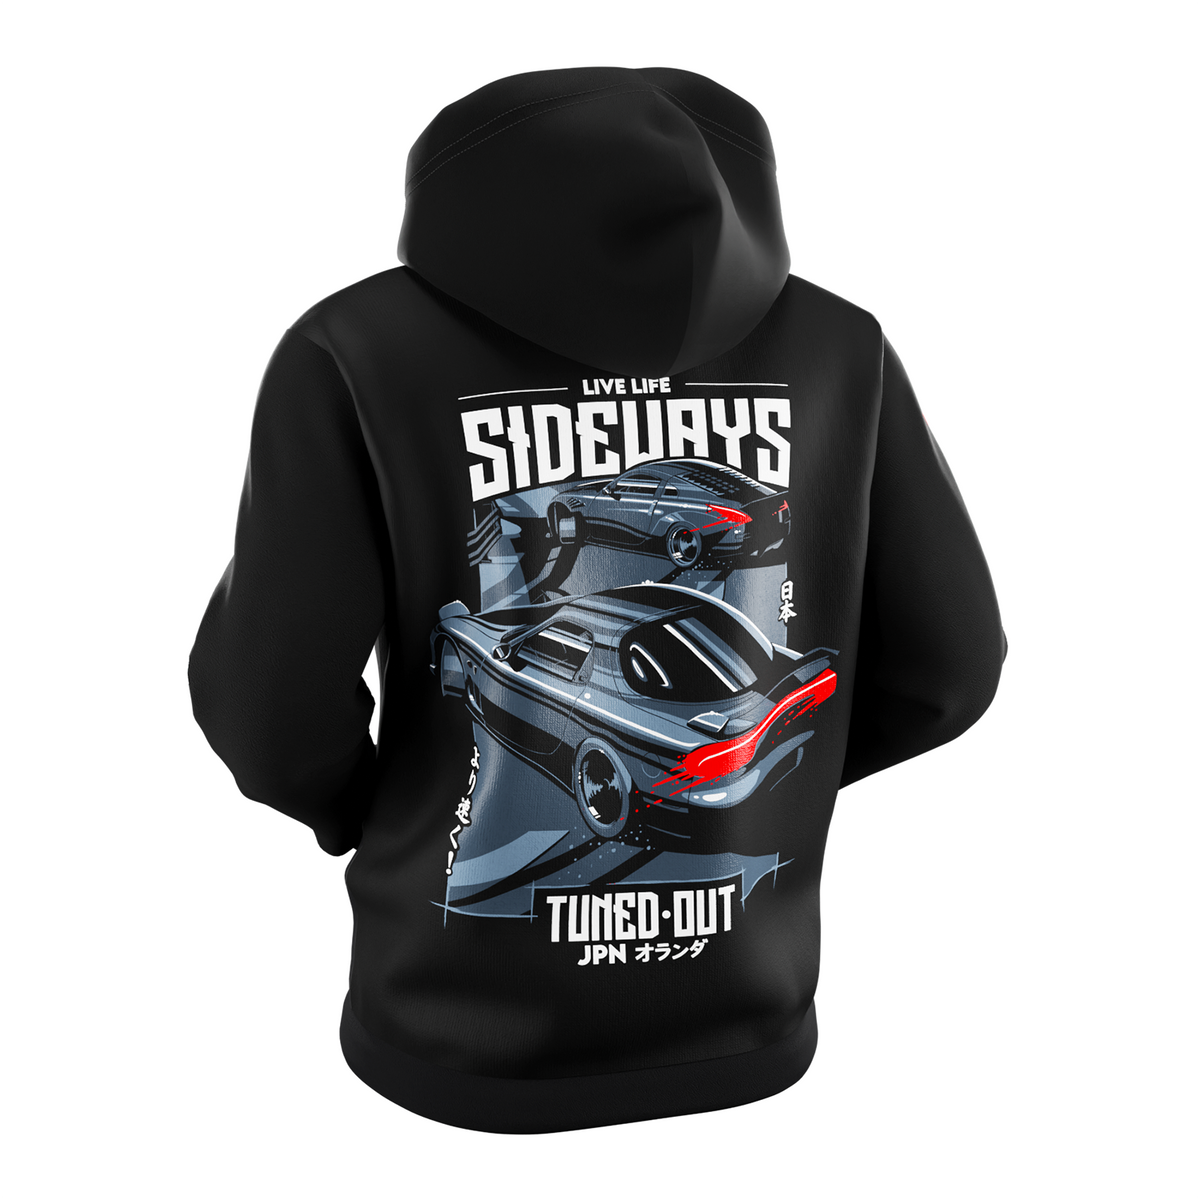 Live Life Sideways hoodie - coming back soon